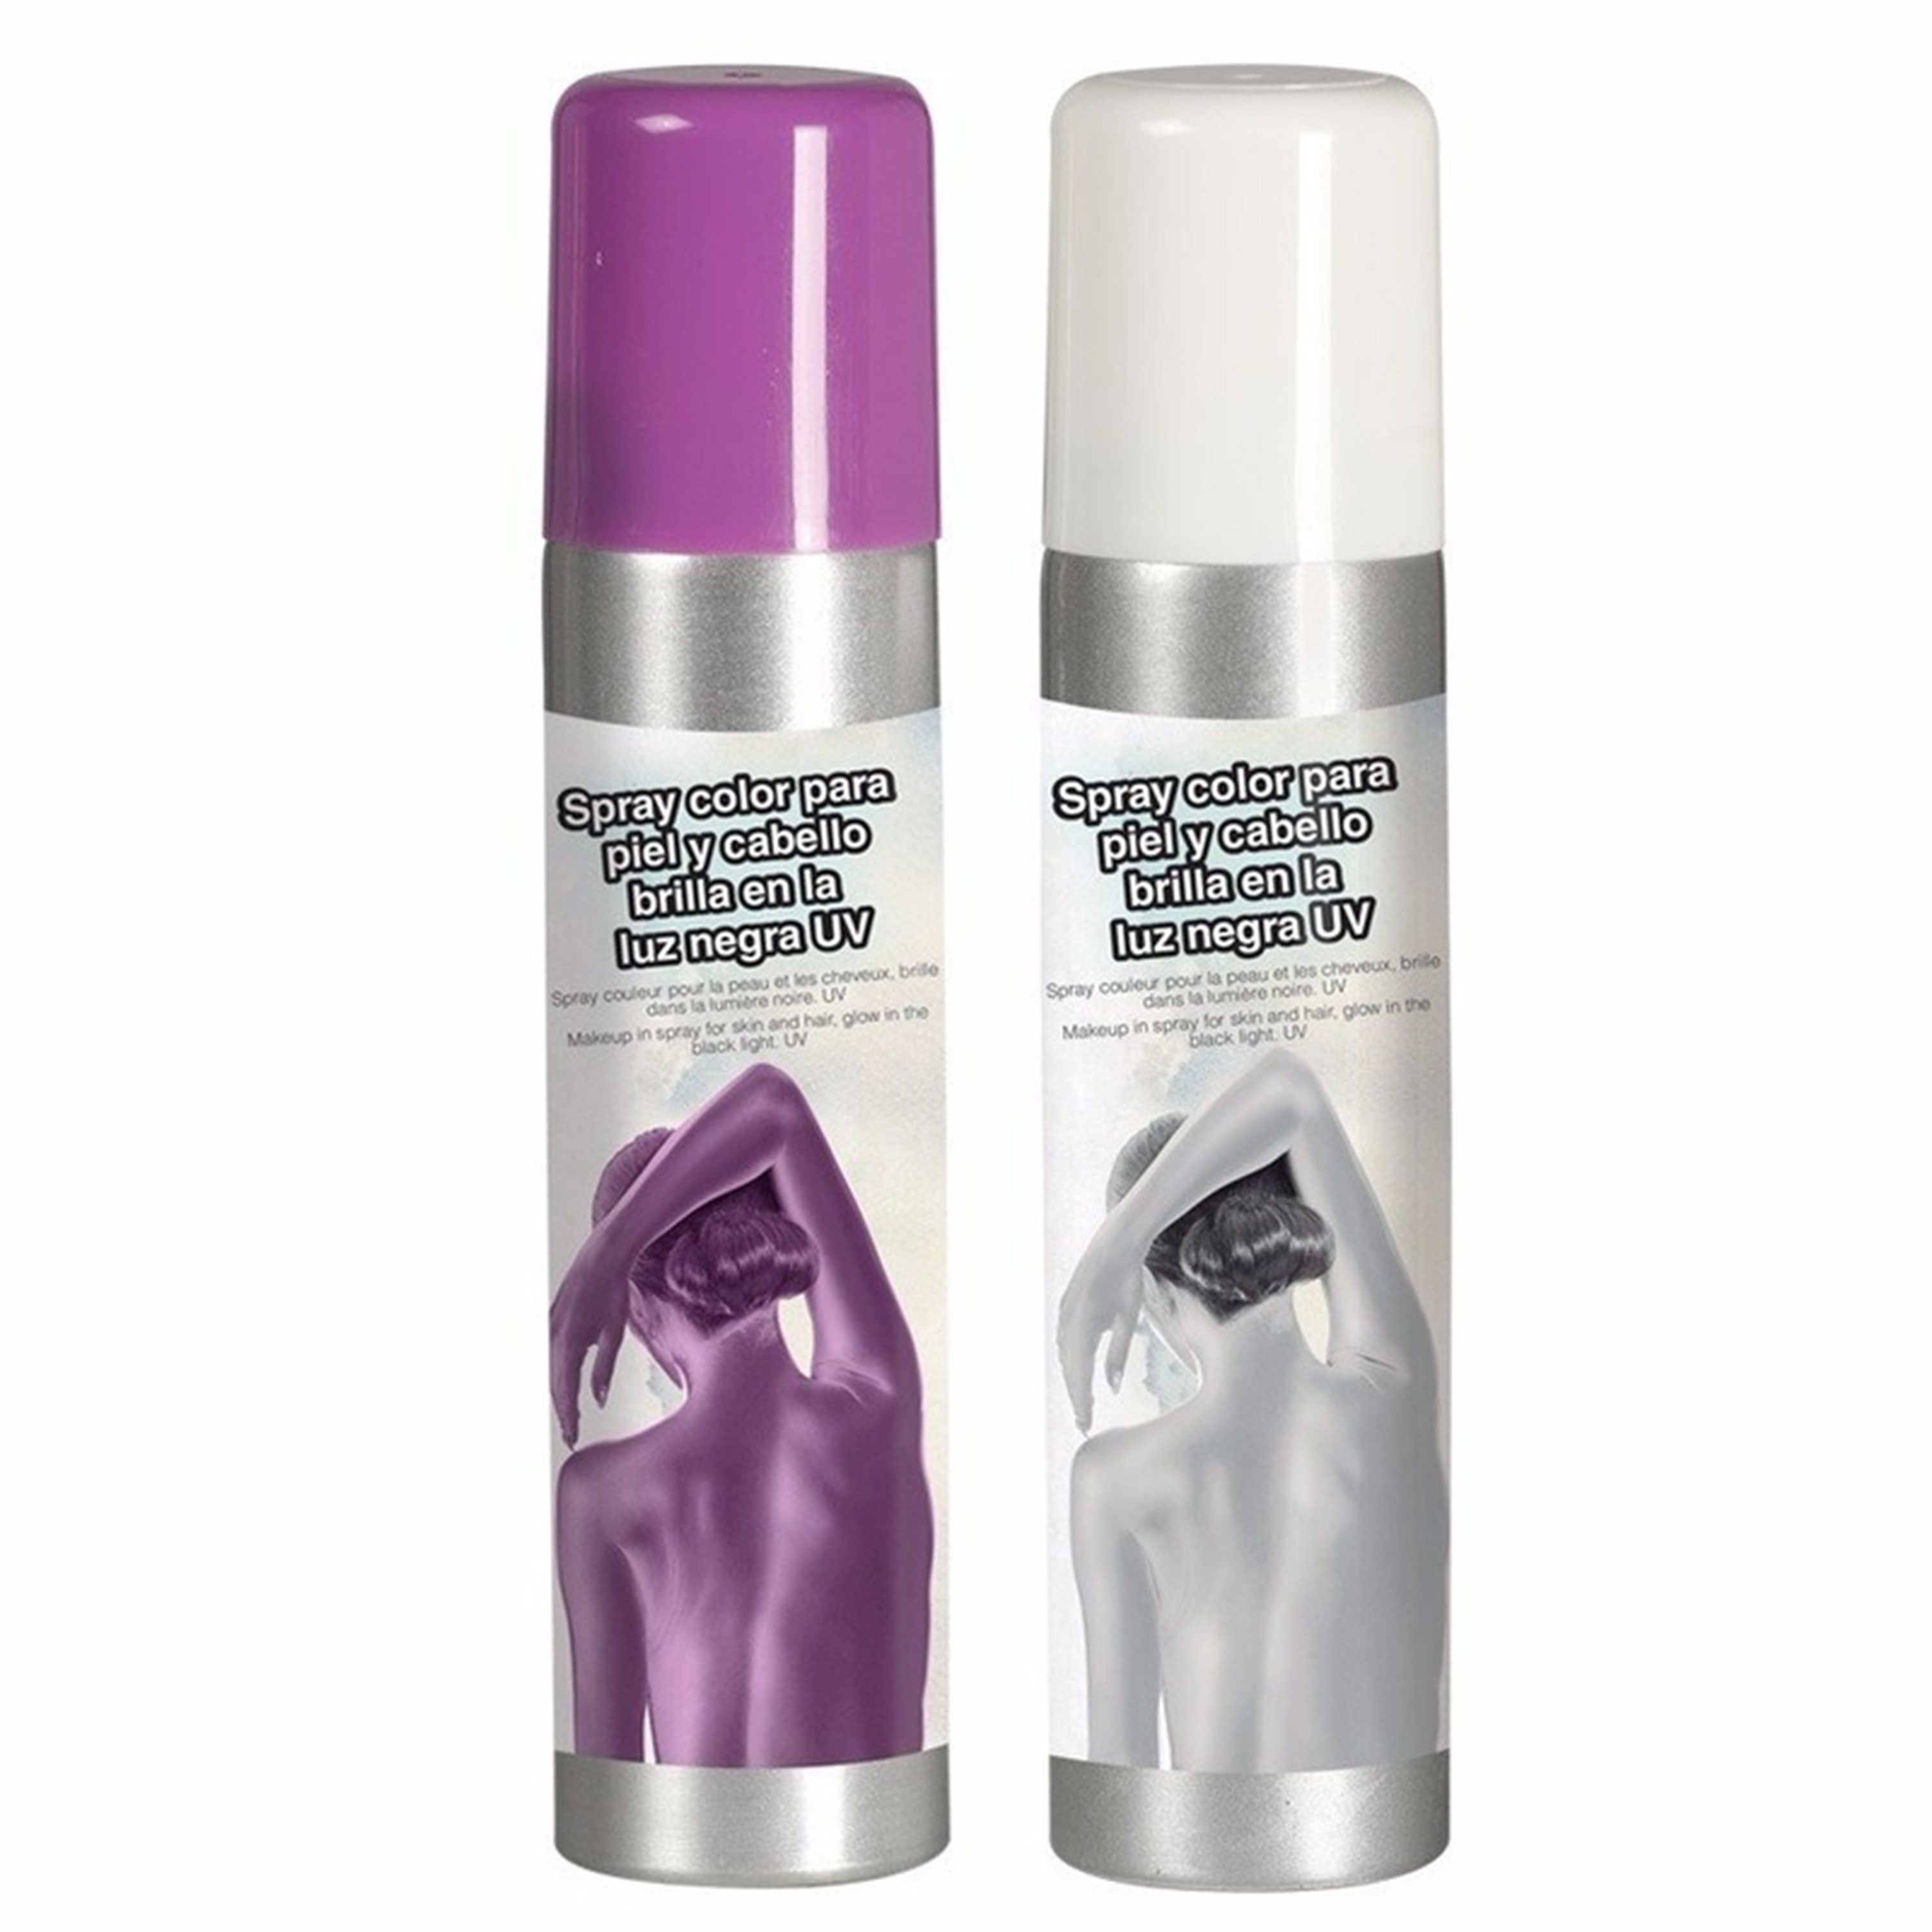 Guirca Haarspray-bodypaint spray 2x kleuren wit en paars 75 ml